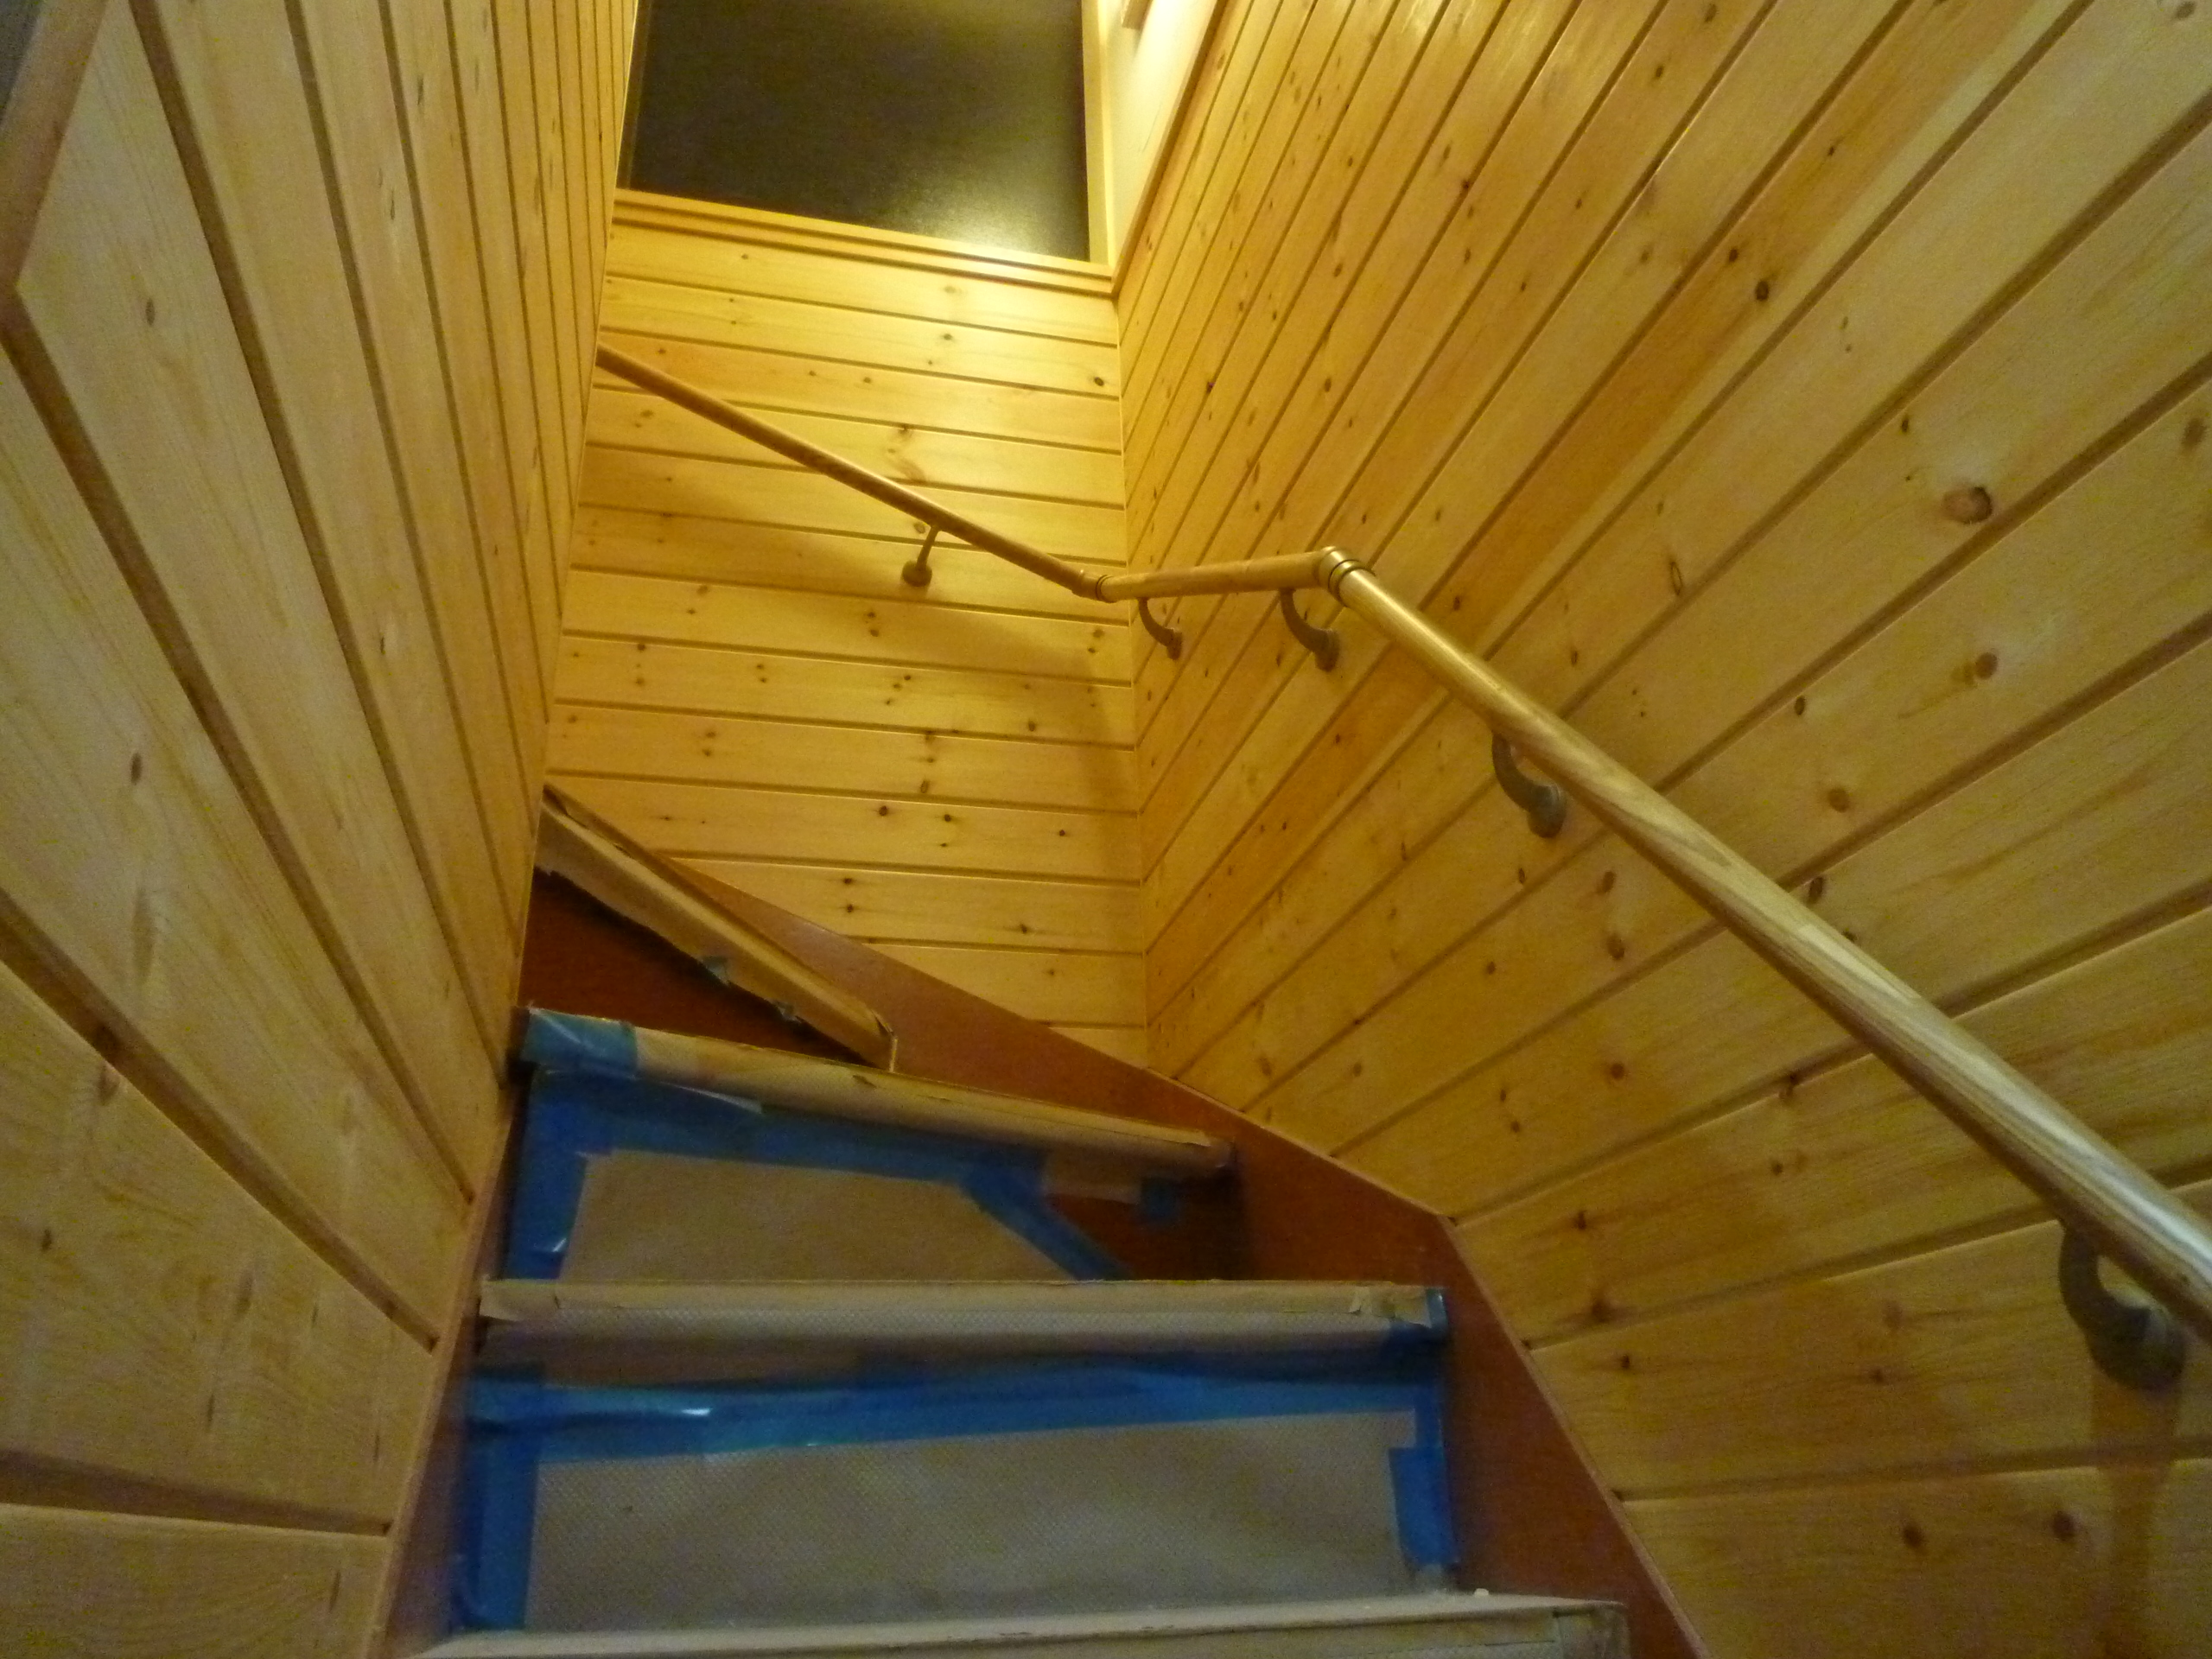 階段室 壁ビニールクロス貼りから無垢羽目板張りにリフォーム 一戸建て 自然素材 シックハウス対策 省エネ リフォーム事例 Lixilリフォームネット